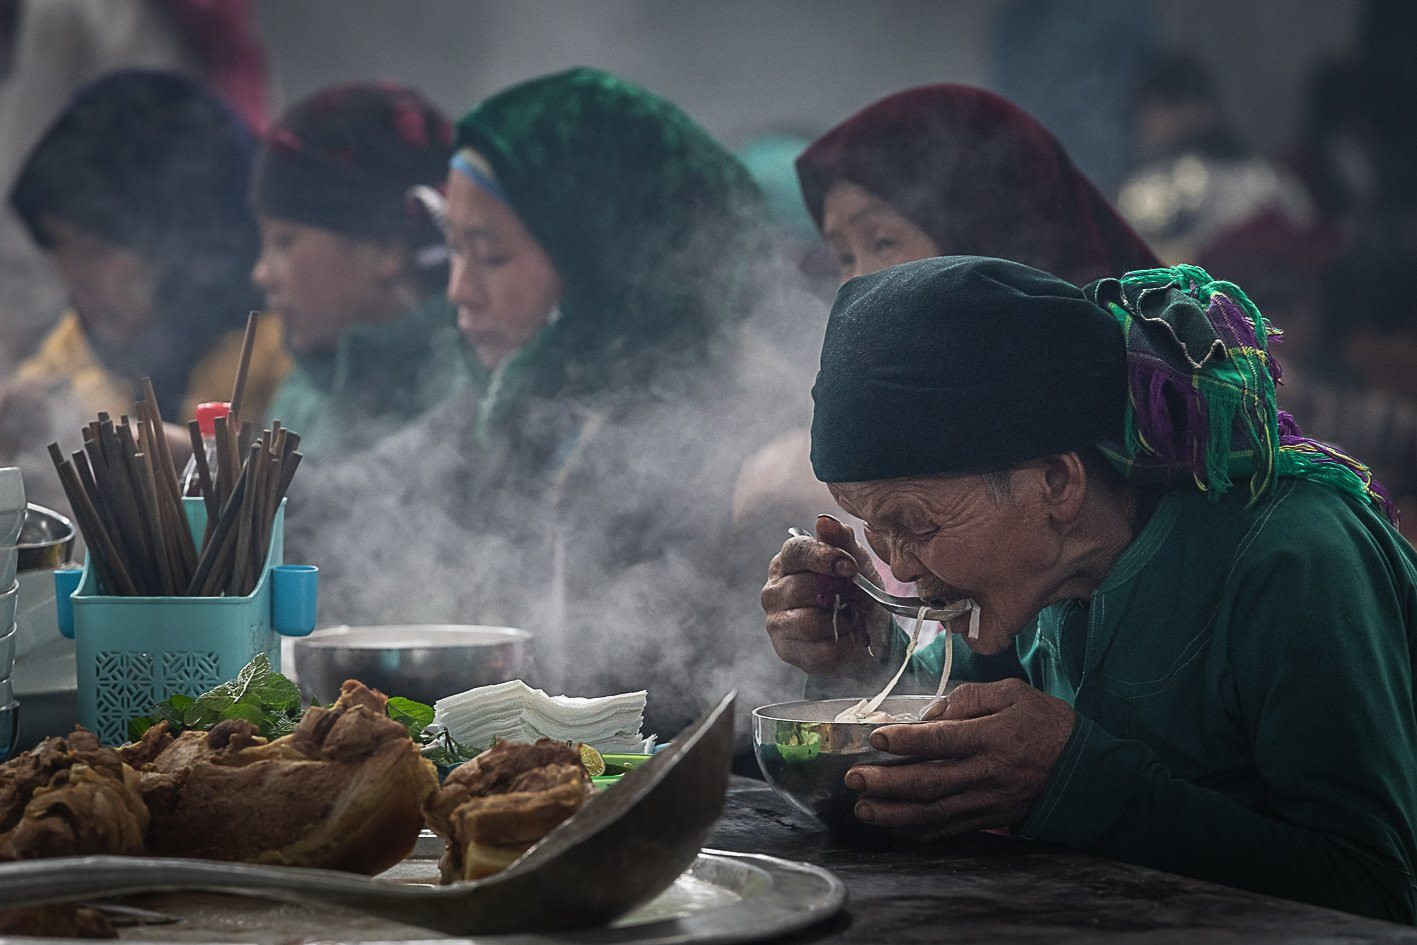 Ngắm nhìn “Chợ trên Đá” qua ống kính của Nghệ sĩ nhiếp ảnh Trần Cao Bảo Long - 3